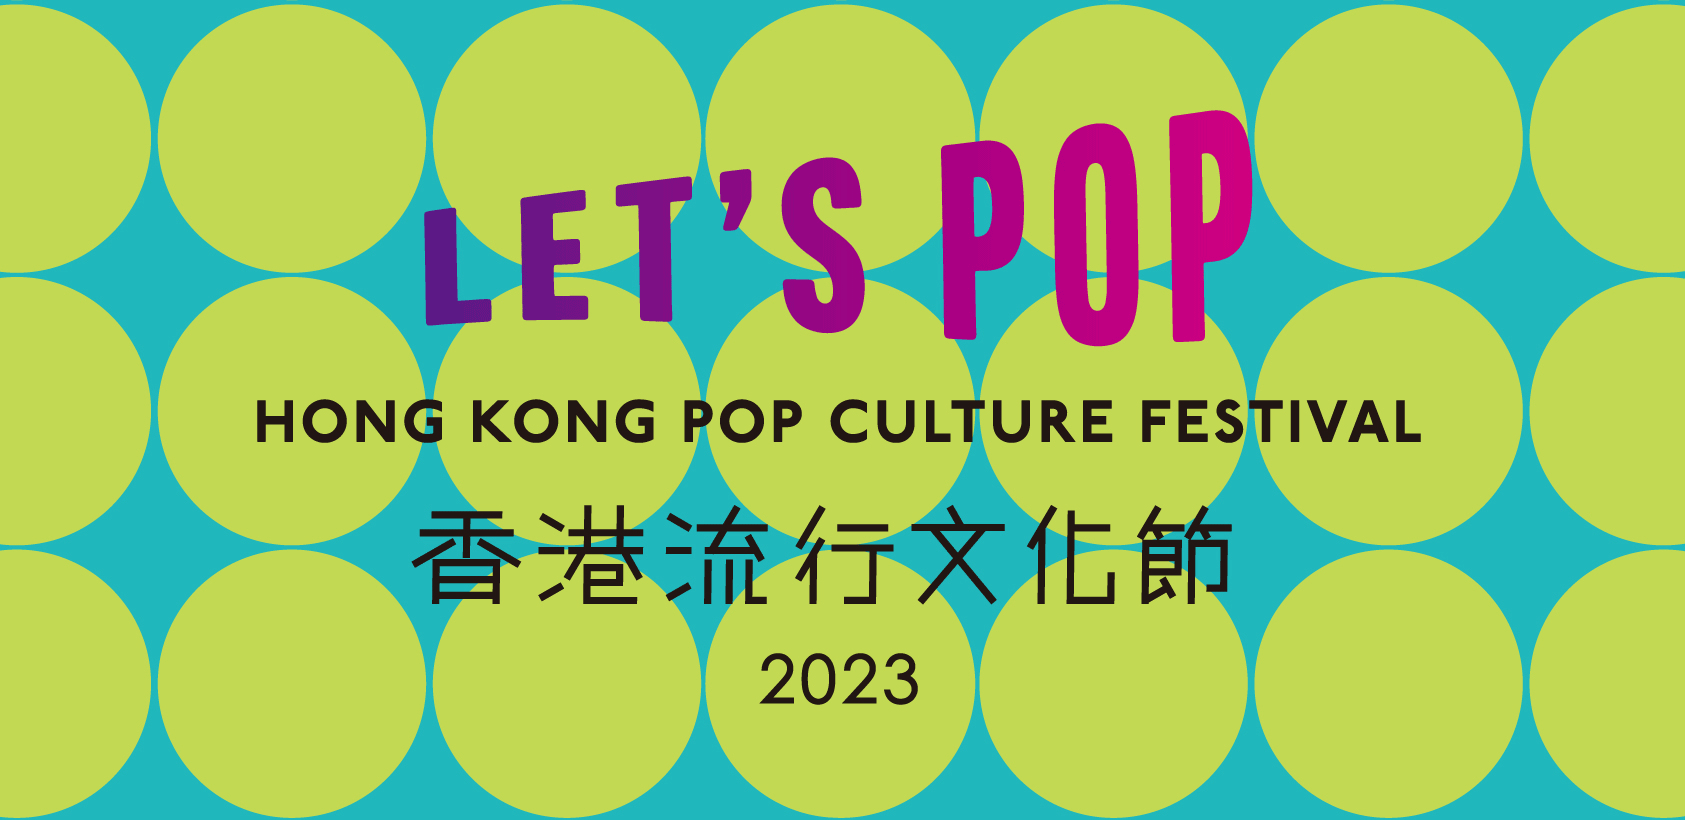 香港流行文化节 2023